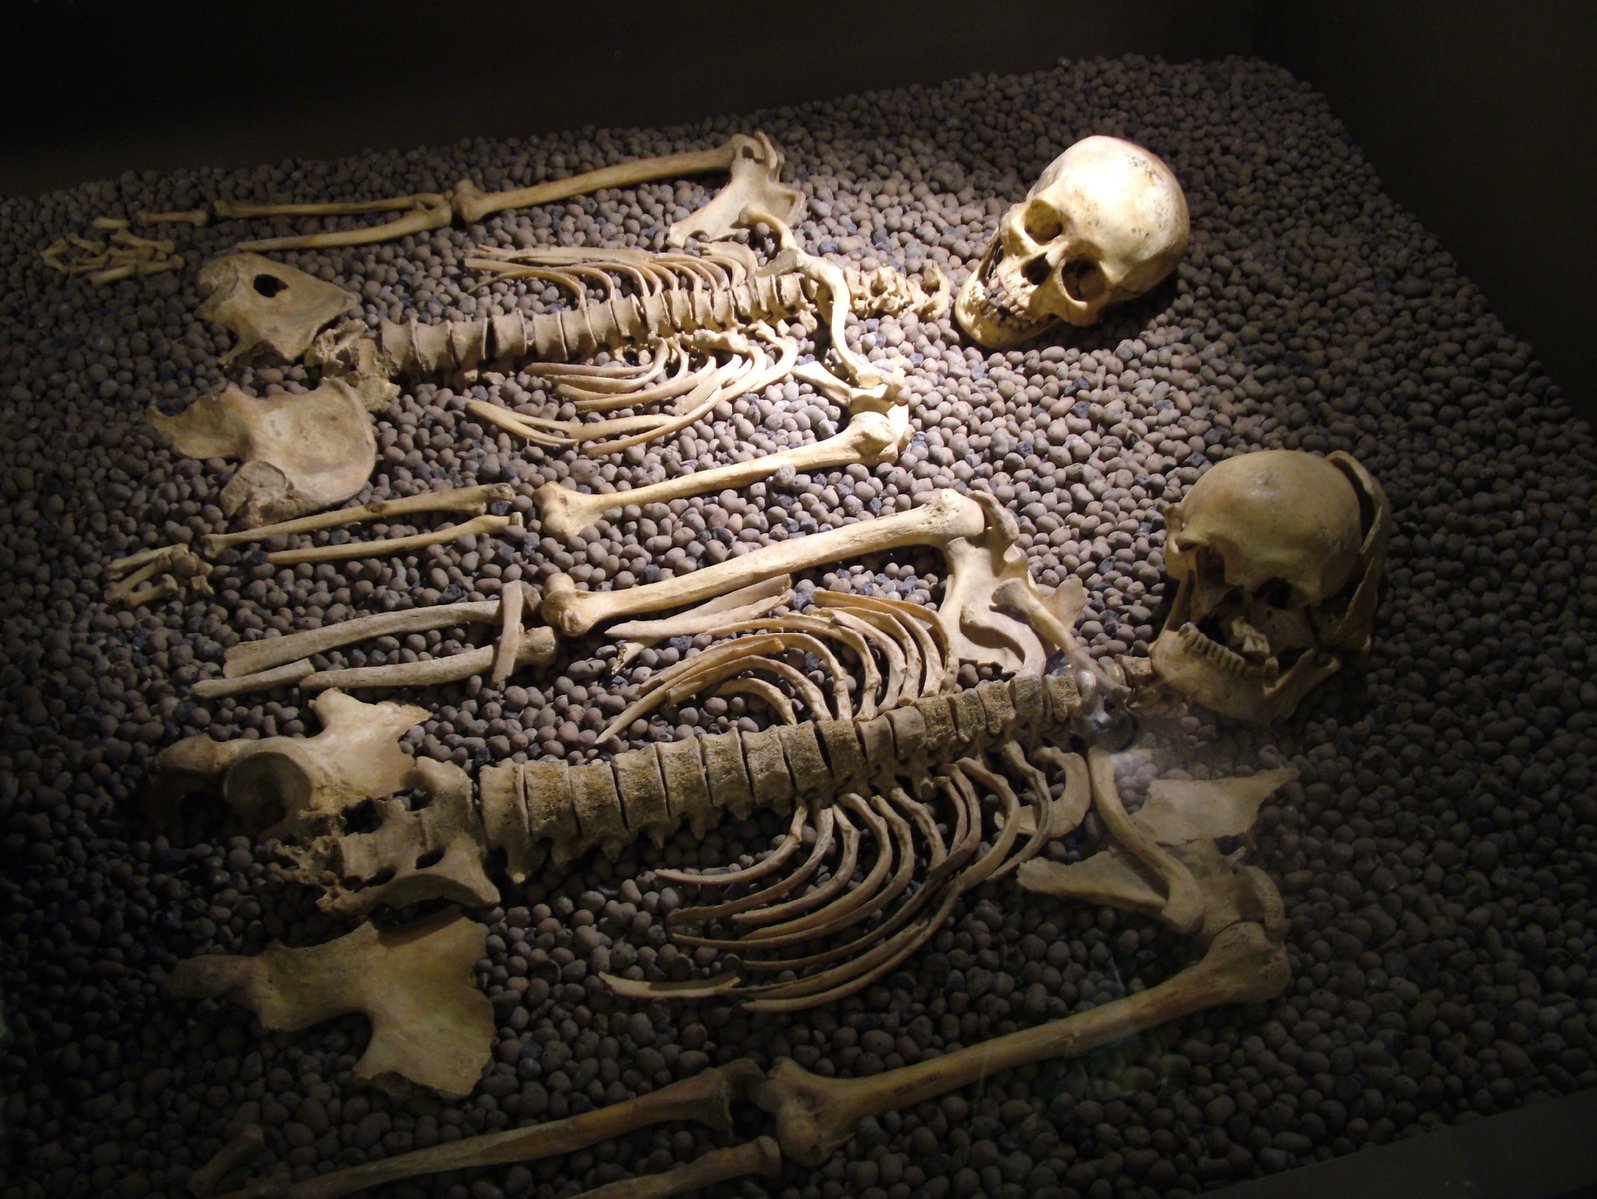 skeletons-in-bed-1403270.jpg